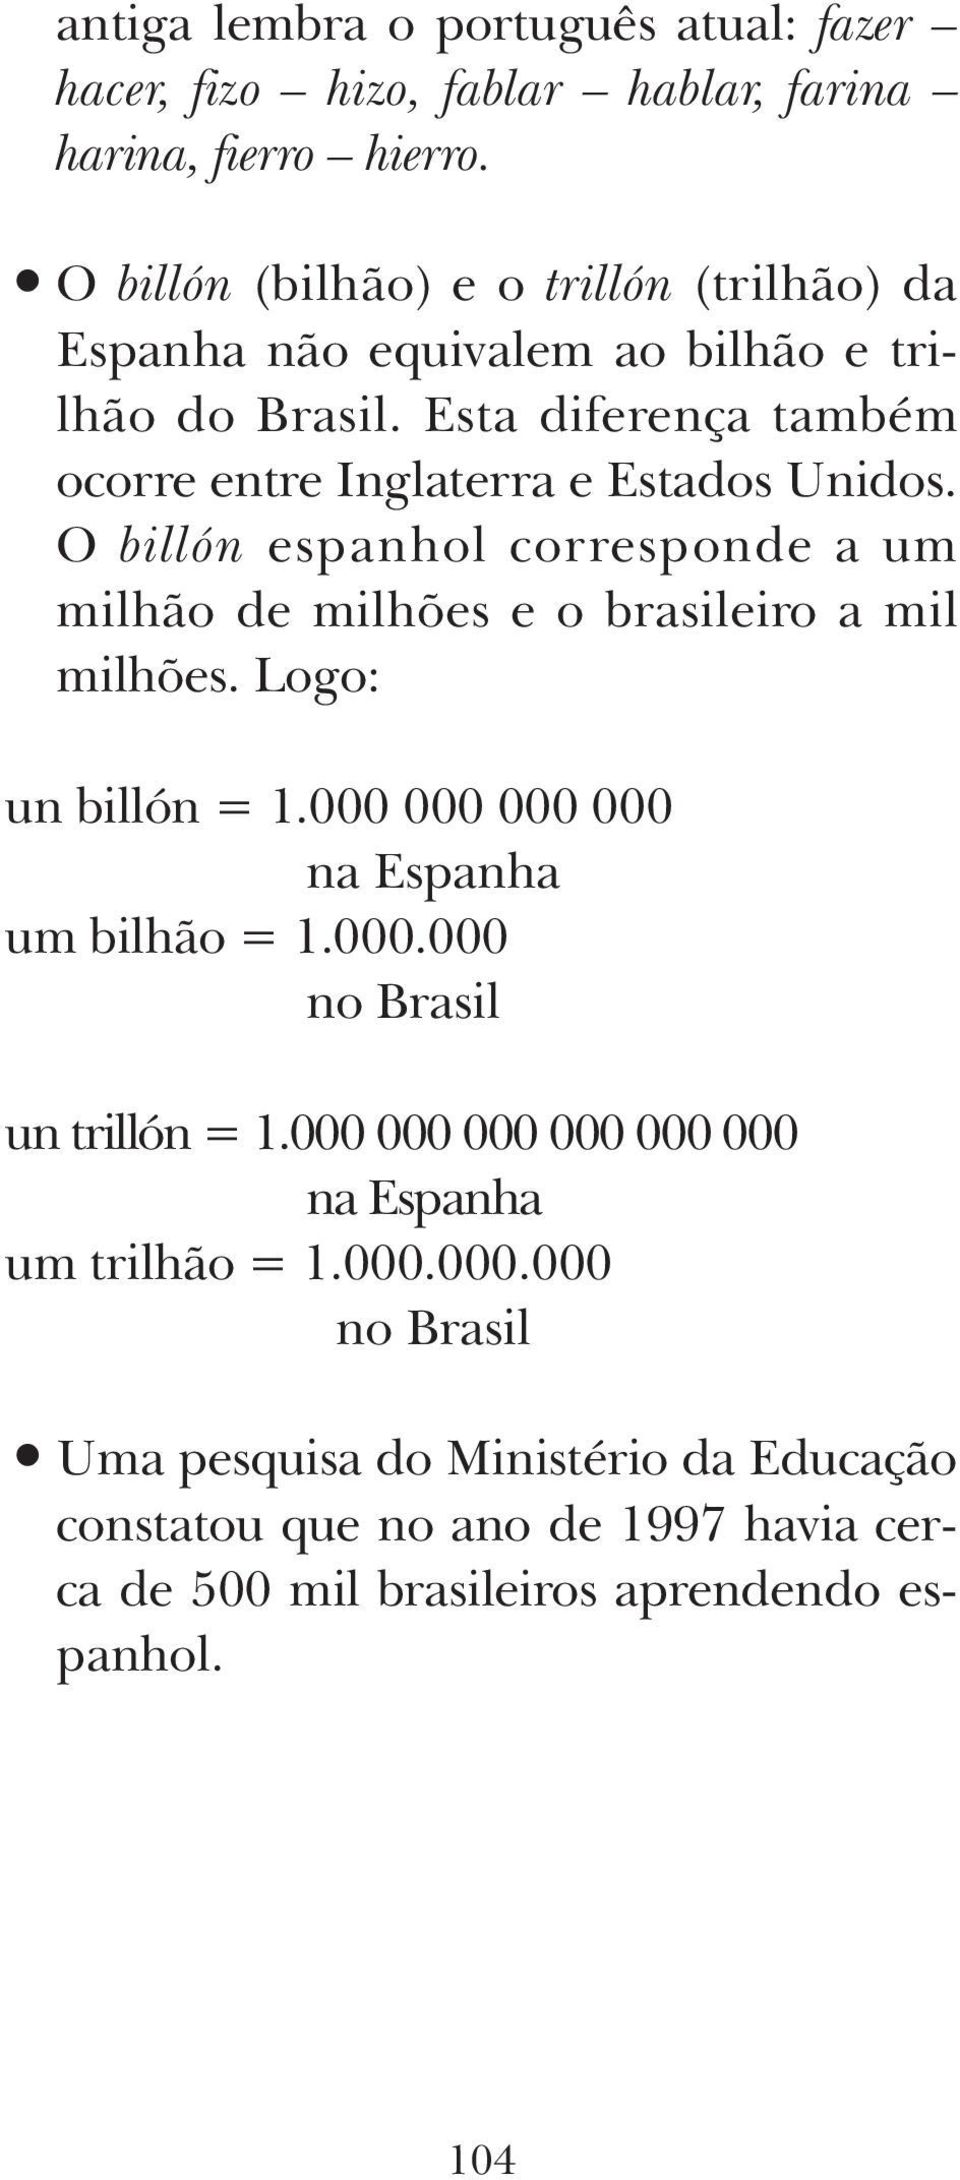 O billón espanhol corresponde a um milhão de milhões e o brasileiro a mil milhões. Logo: un billón = 1.000 000 000 000 na Espanha um bilhão = 1.000.000 no Brasil un trillón = 1.